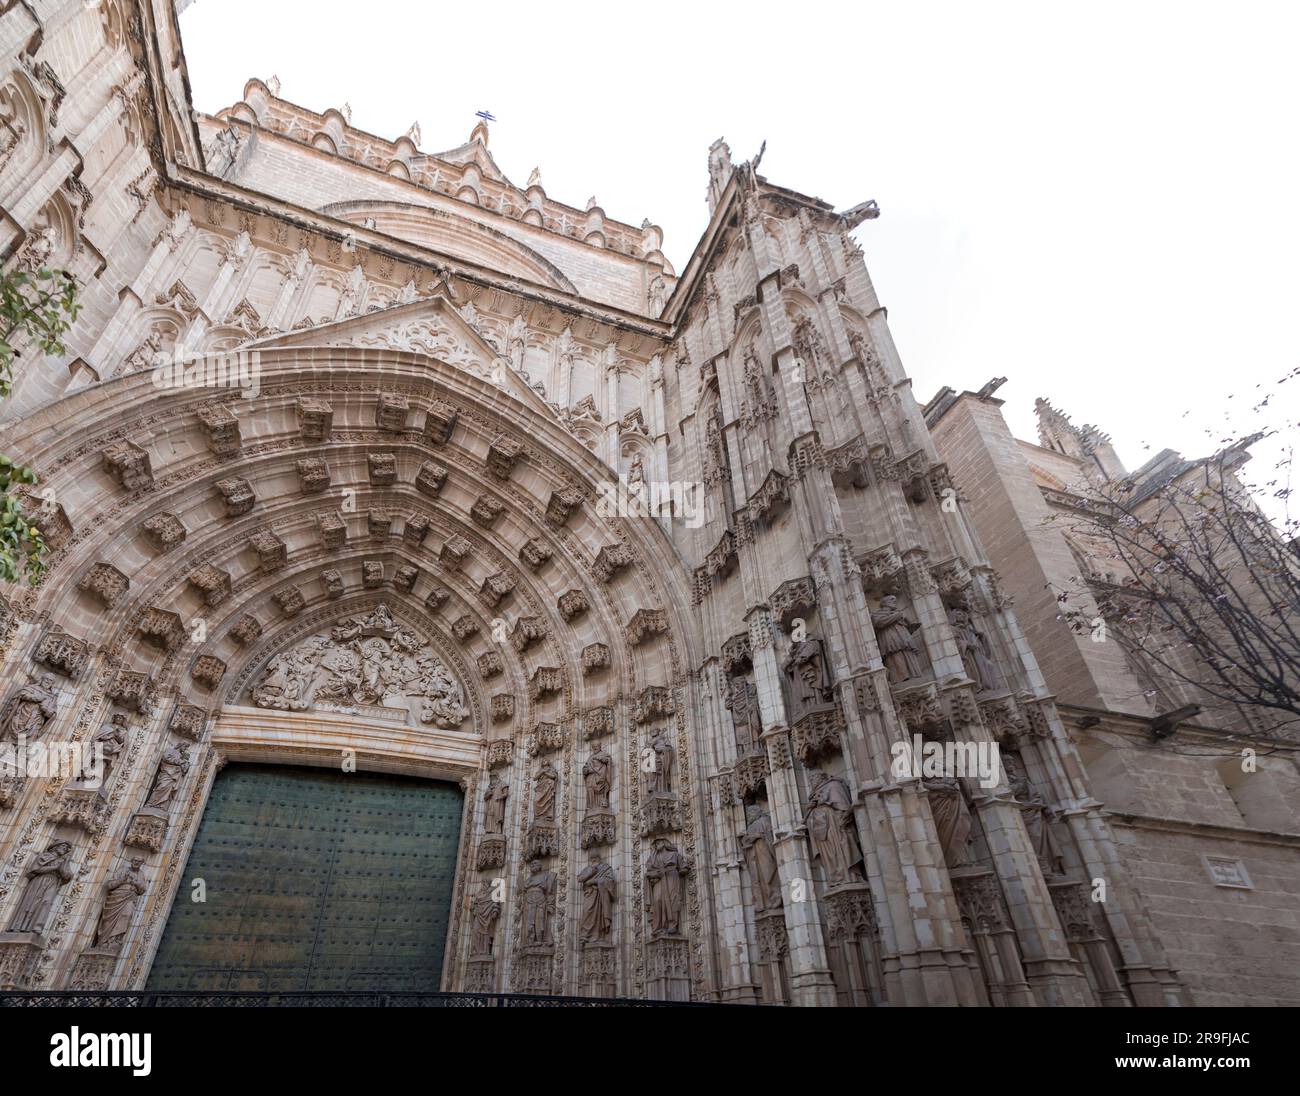 La cathédrale Sainte Marie du Siège, la cathédrale de Santa Maria de la Sède, ou la cathédrale de Séville, est une cathédrale catholique romaine de Séville, en Espagne Banque D'Images